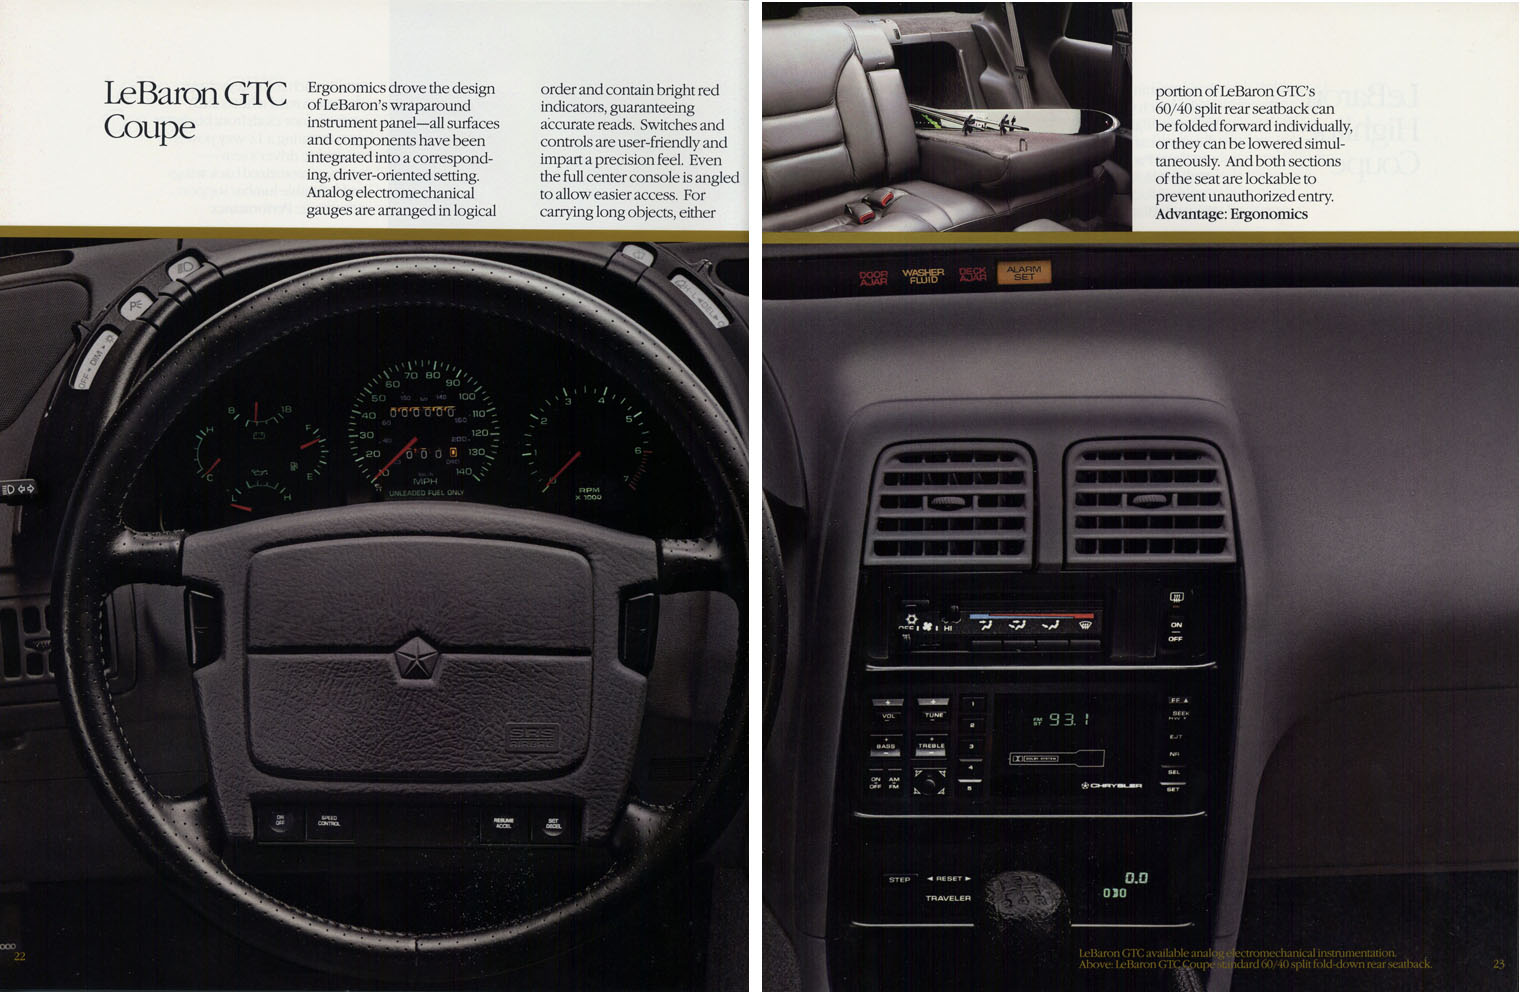 1992 Chrysler-15